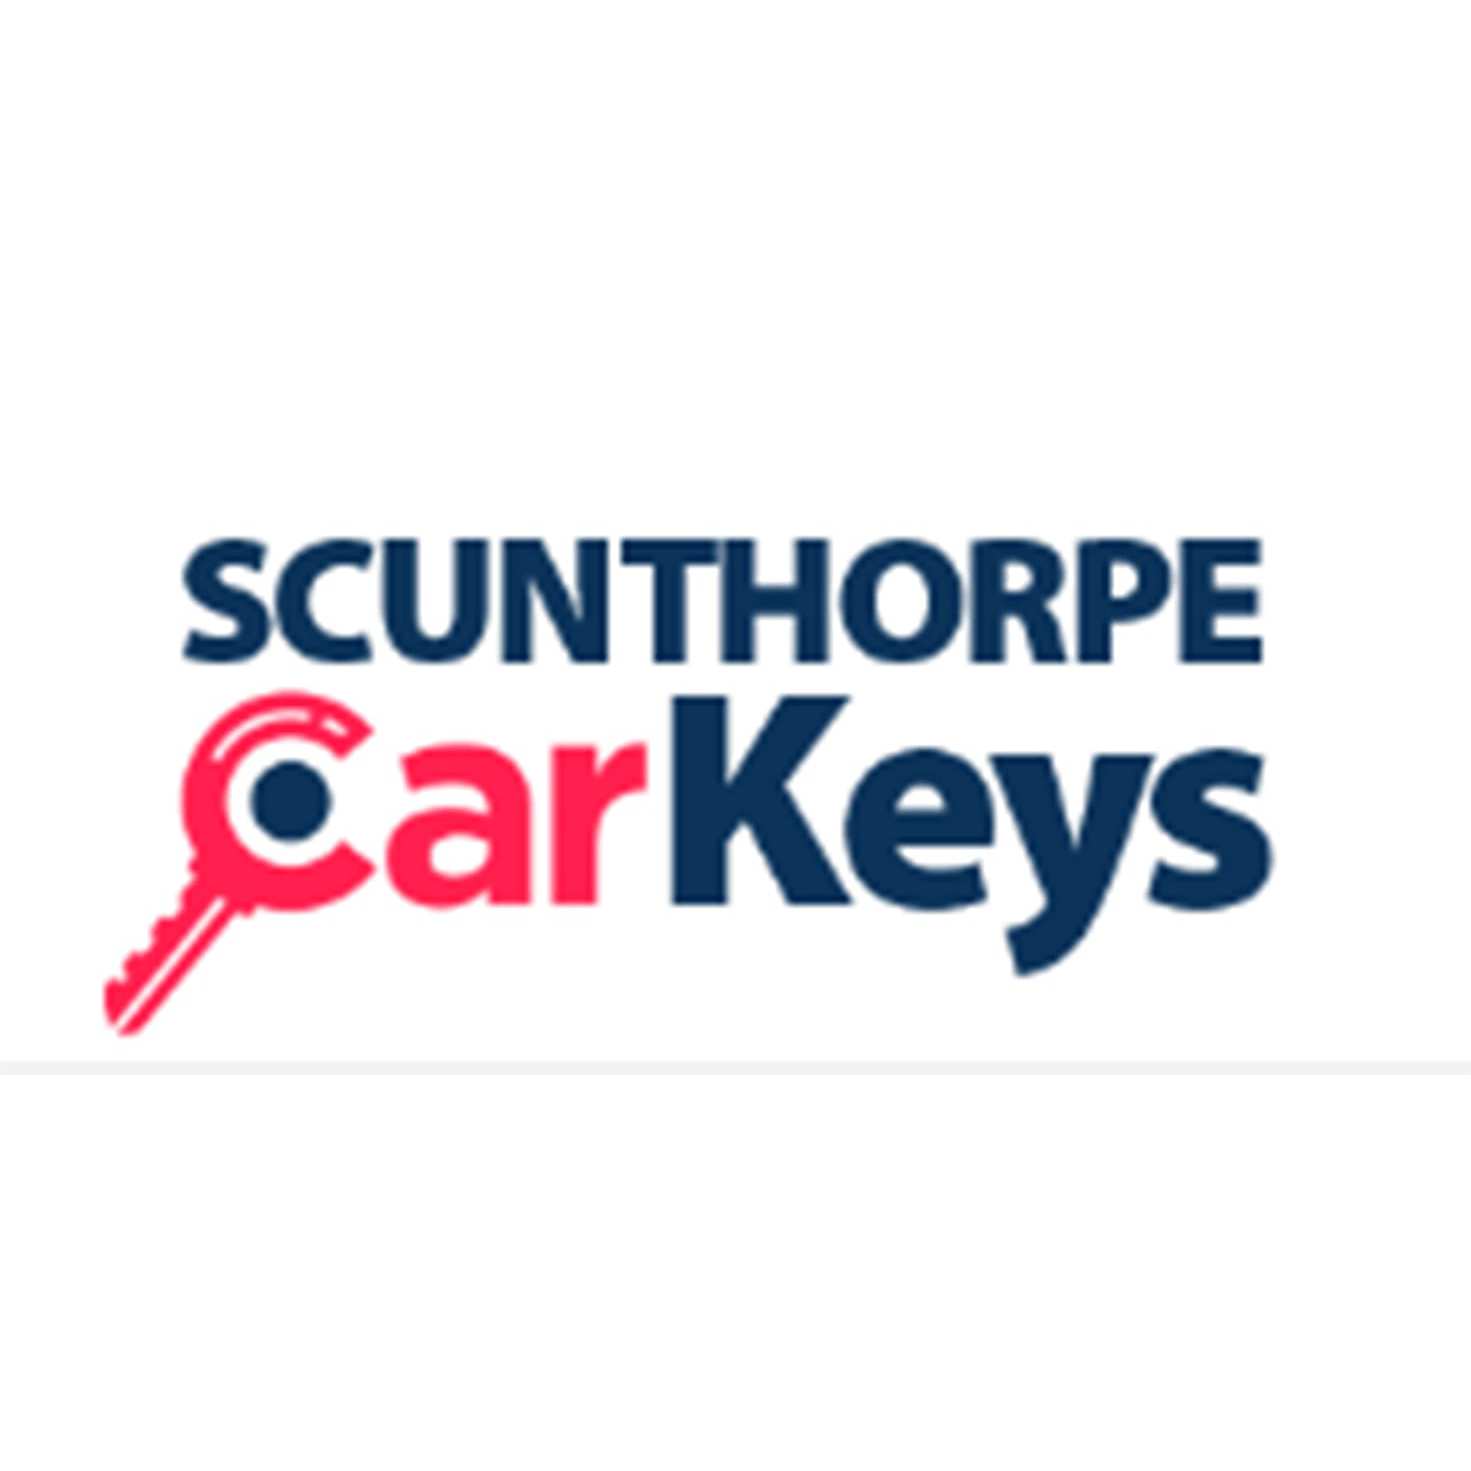 Scunthorpe Car Keys Logo